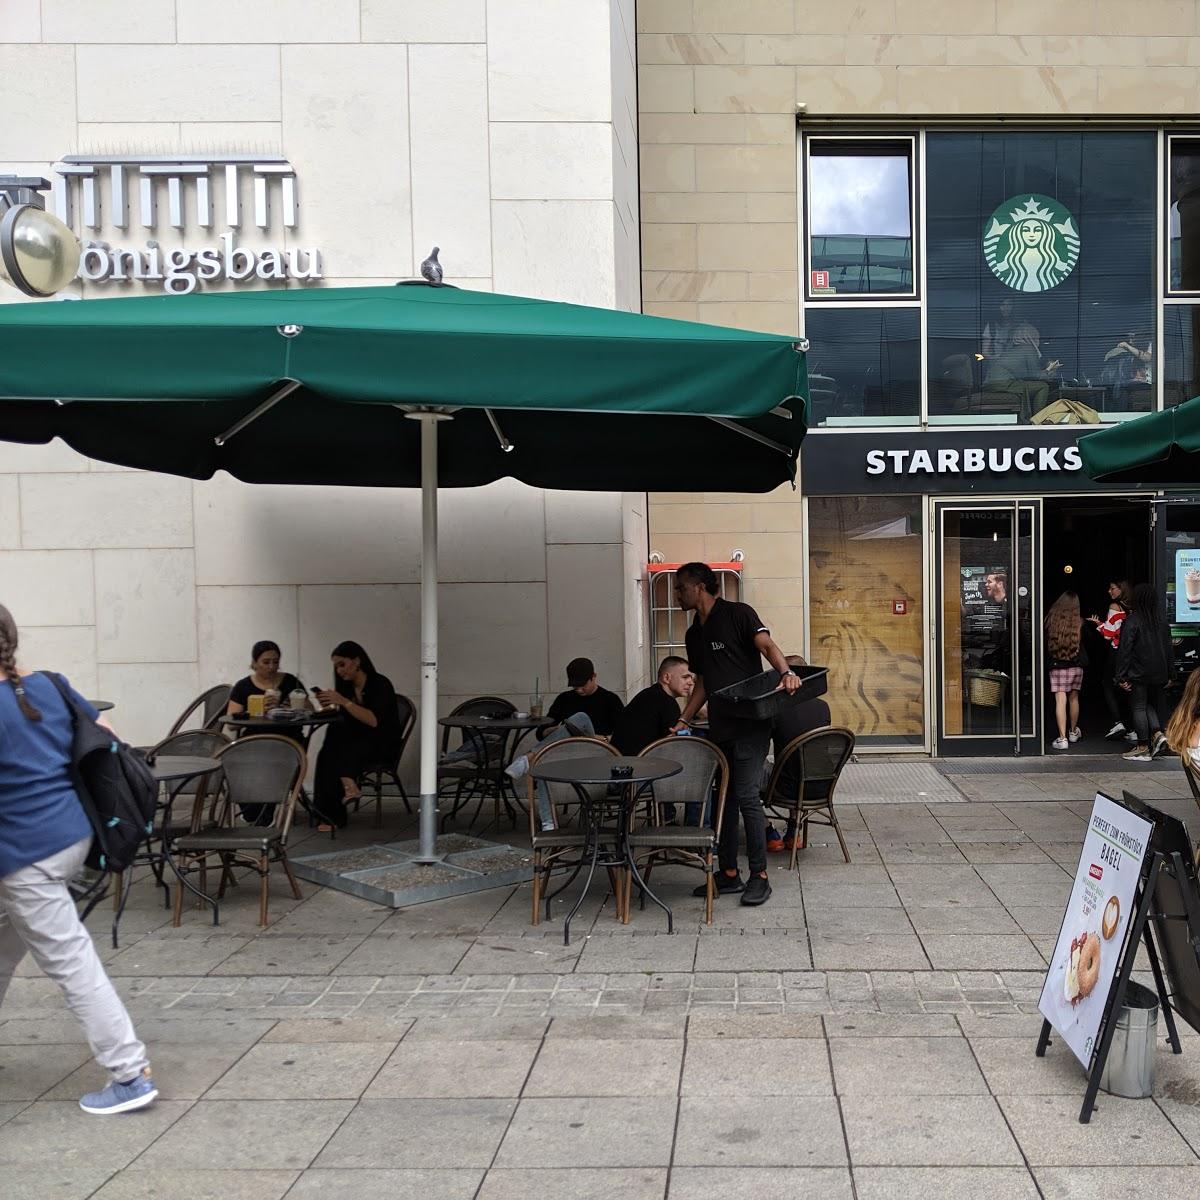 Restaurant "Starbucks" in Stuttgart